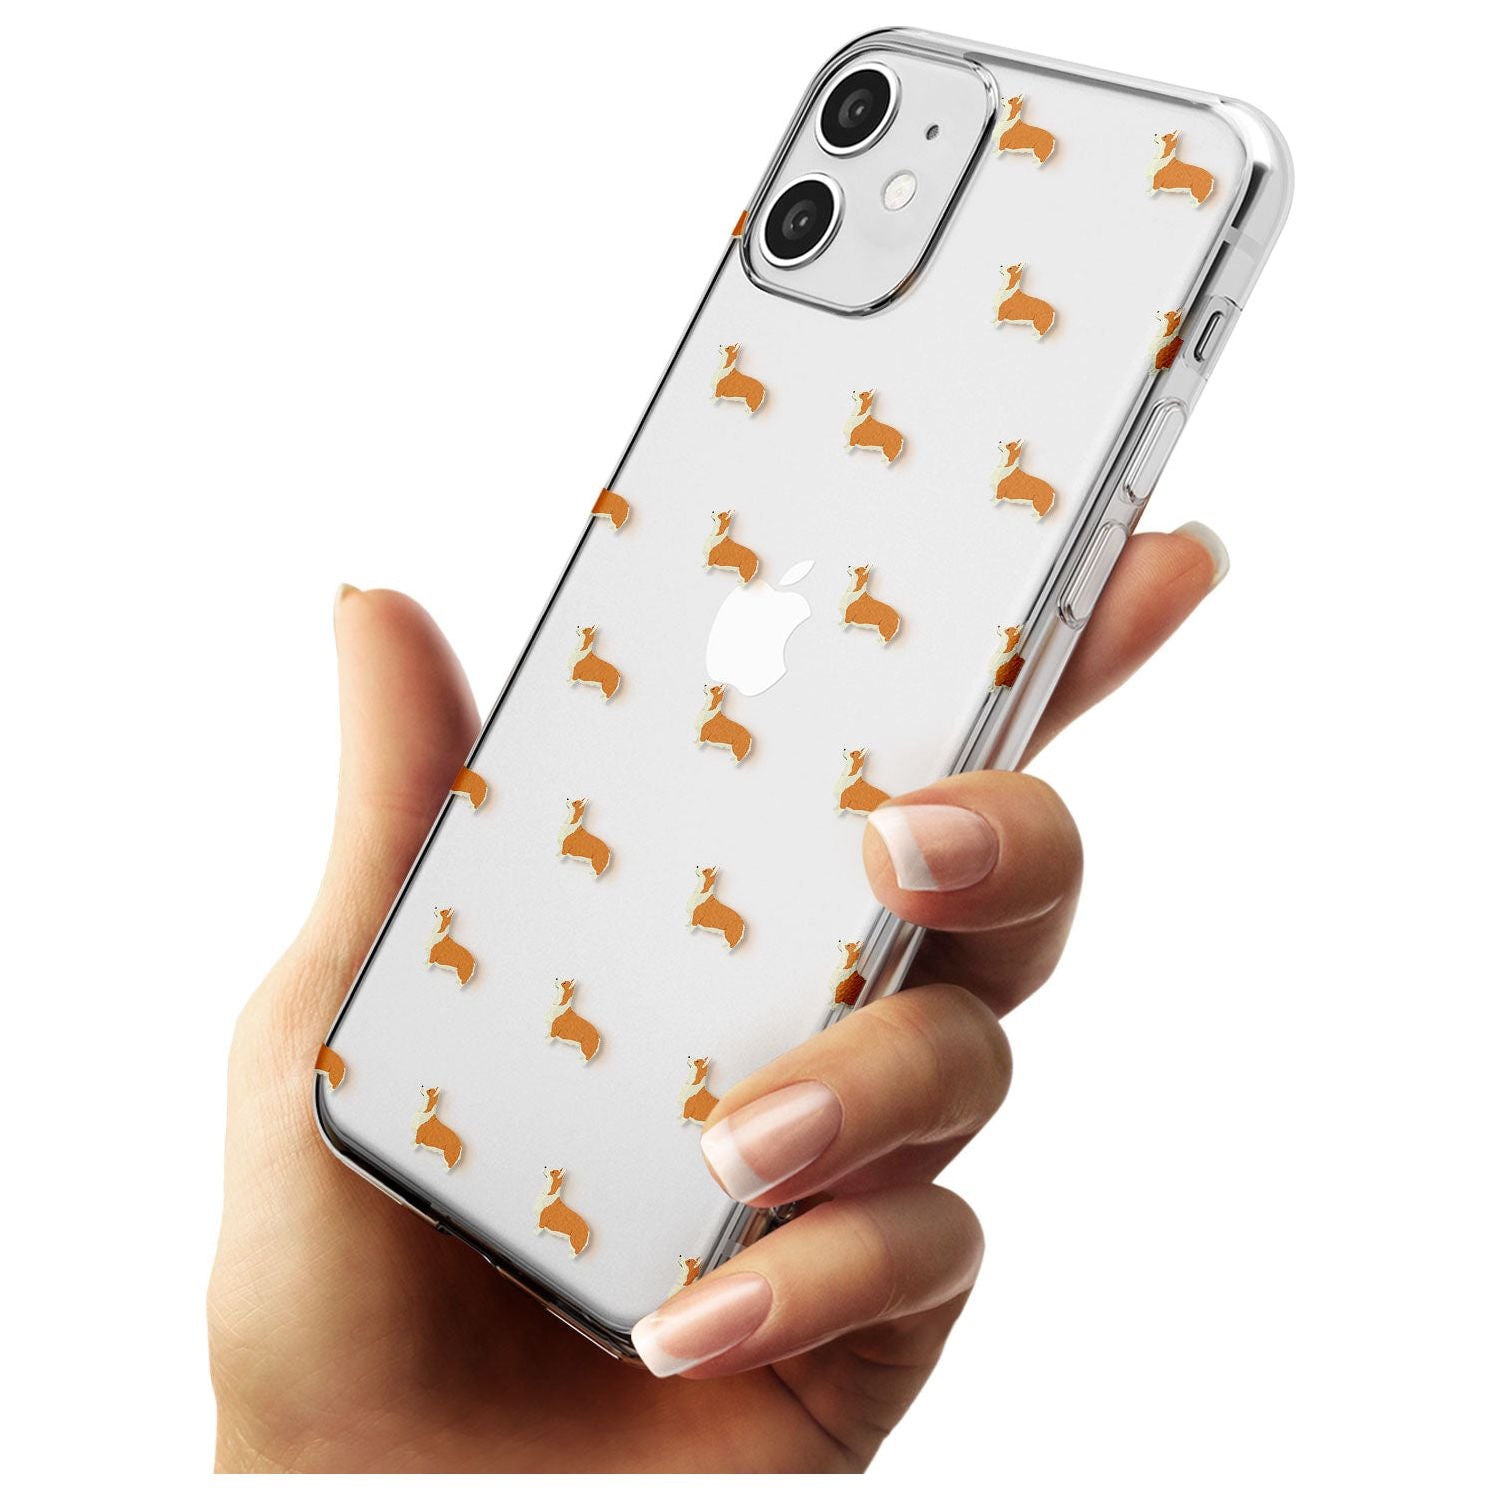 Pembroke Welsh Corgi Dog Pattern Clear Slim TPU Phone Case for iPhone 11